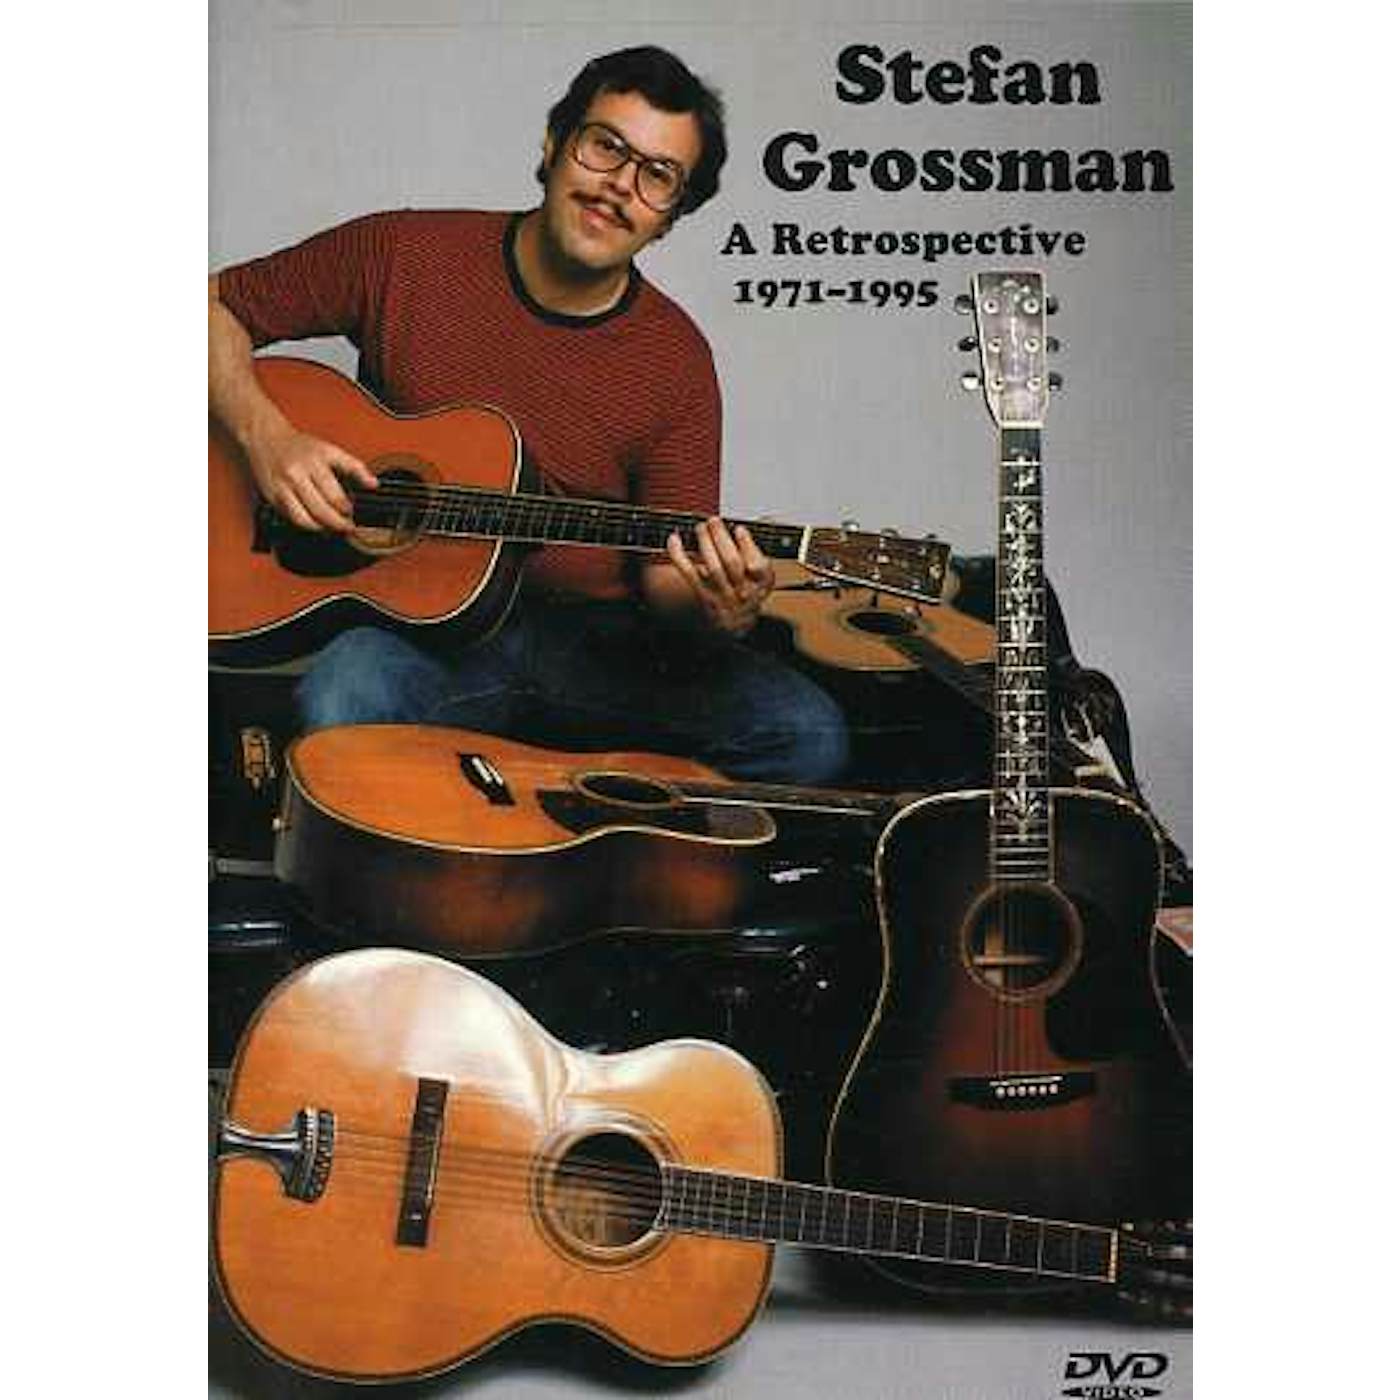 Stefan Grossman A RETROSPECTIVE 1971-1995 DVD